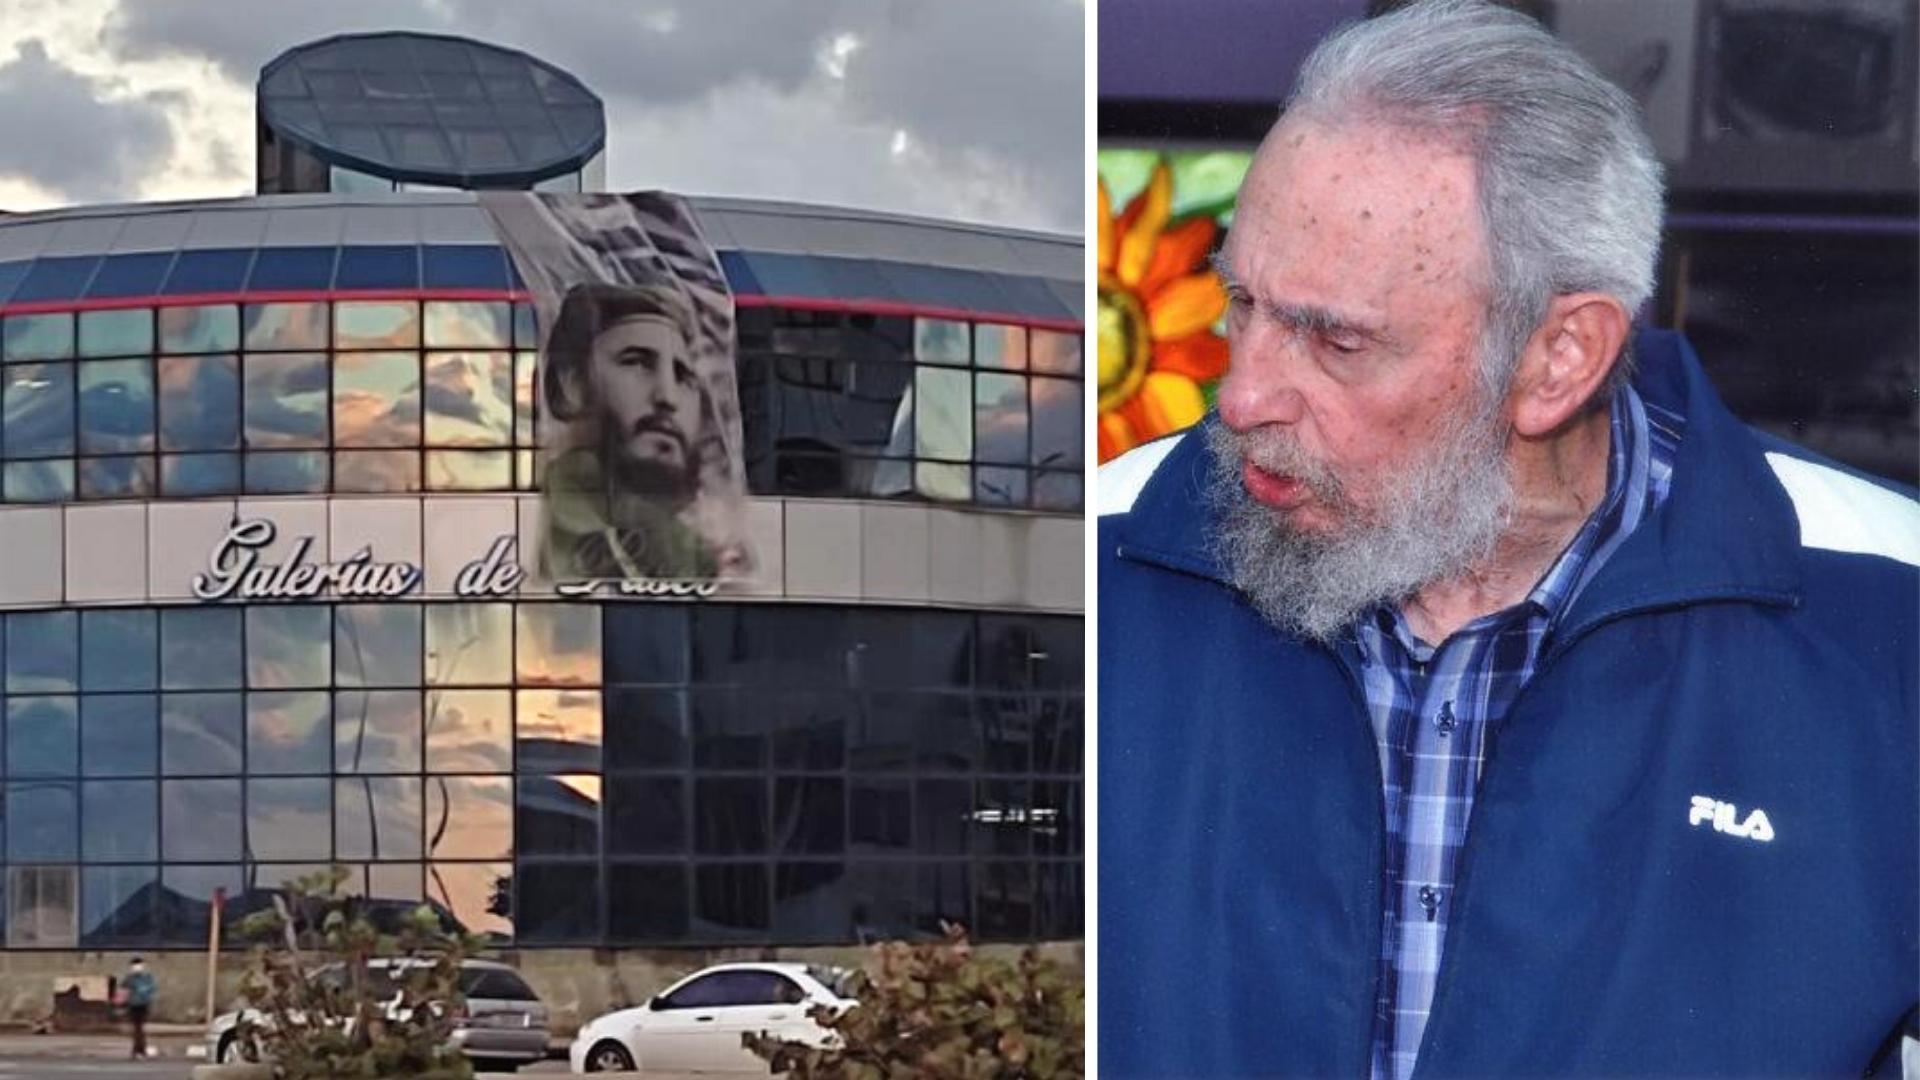 Imagen gigante de Fidel Castro en tienda MLC